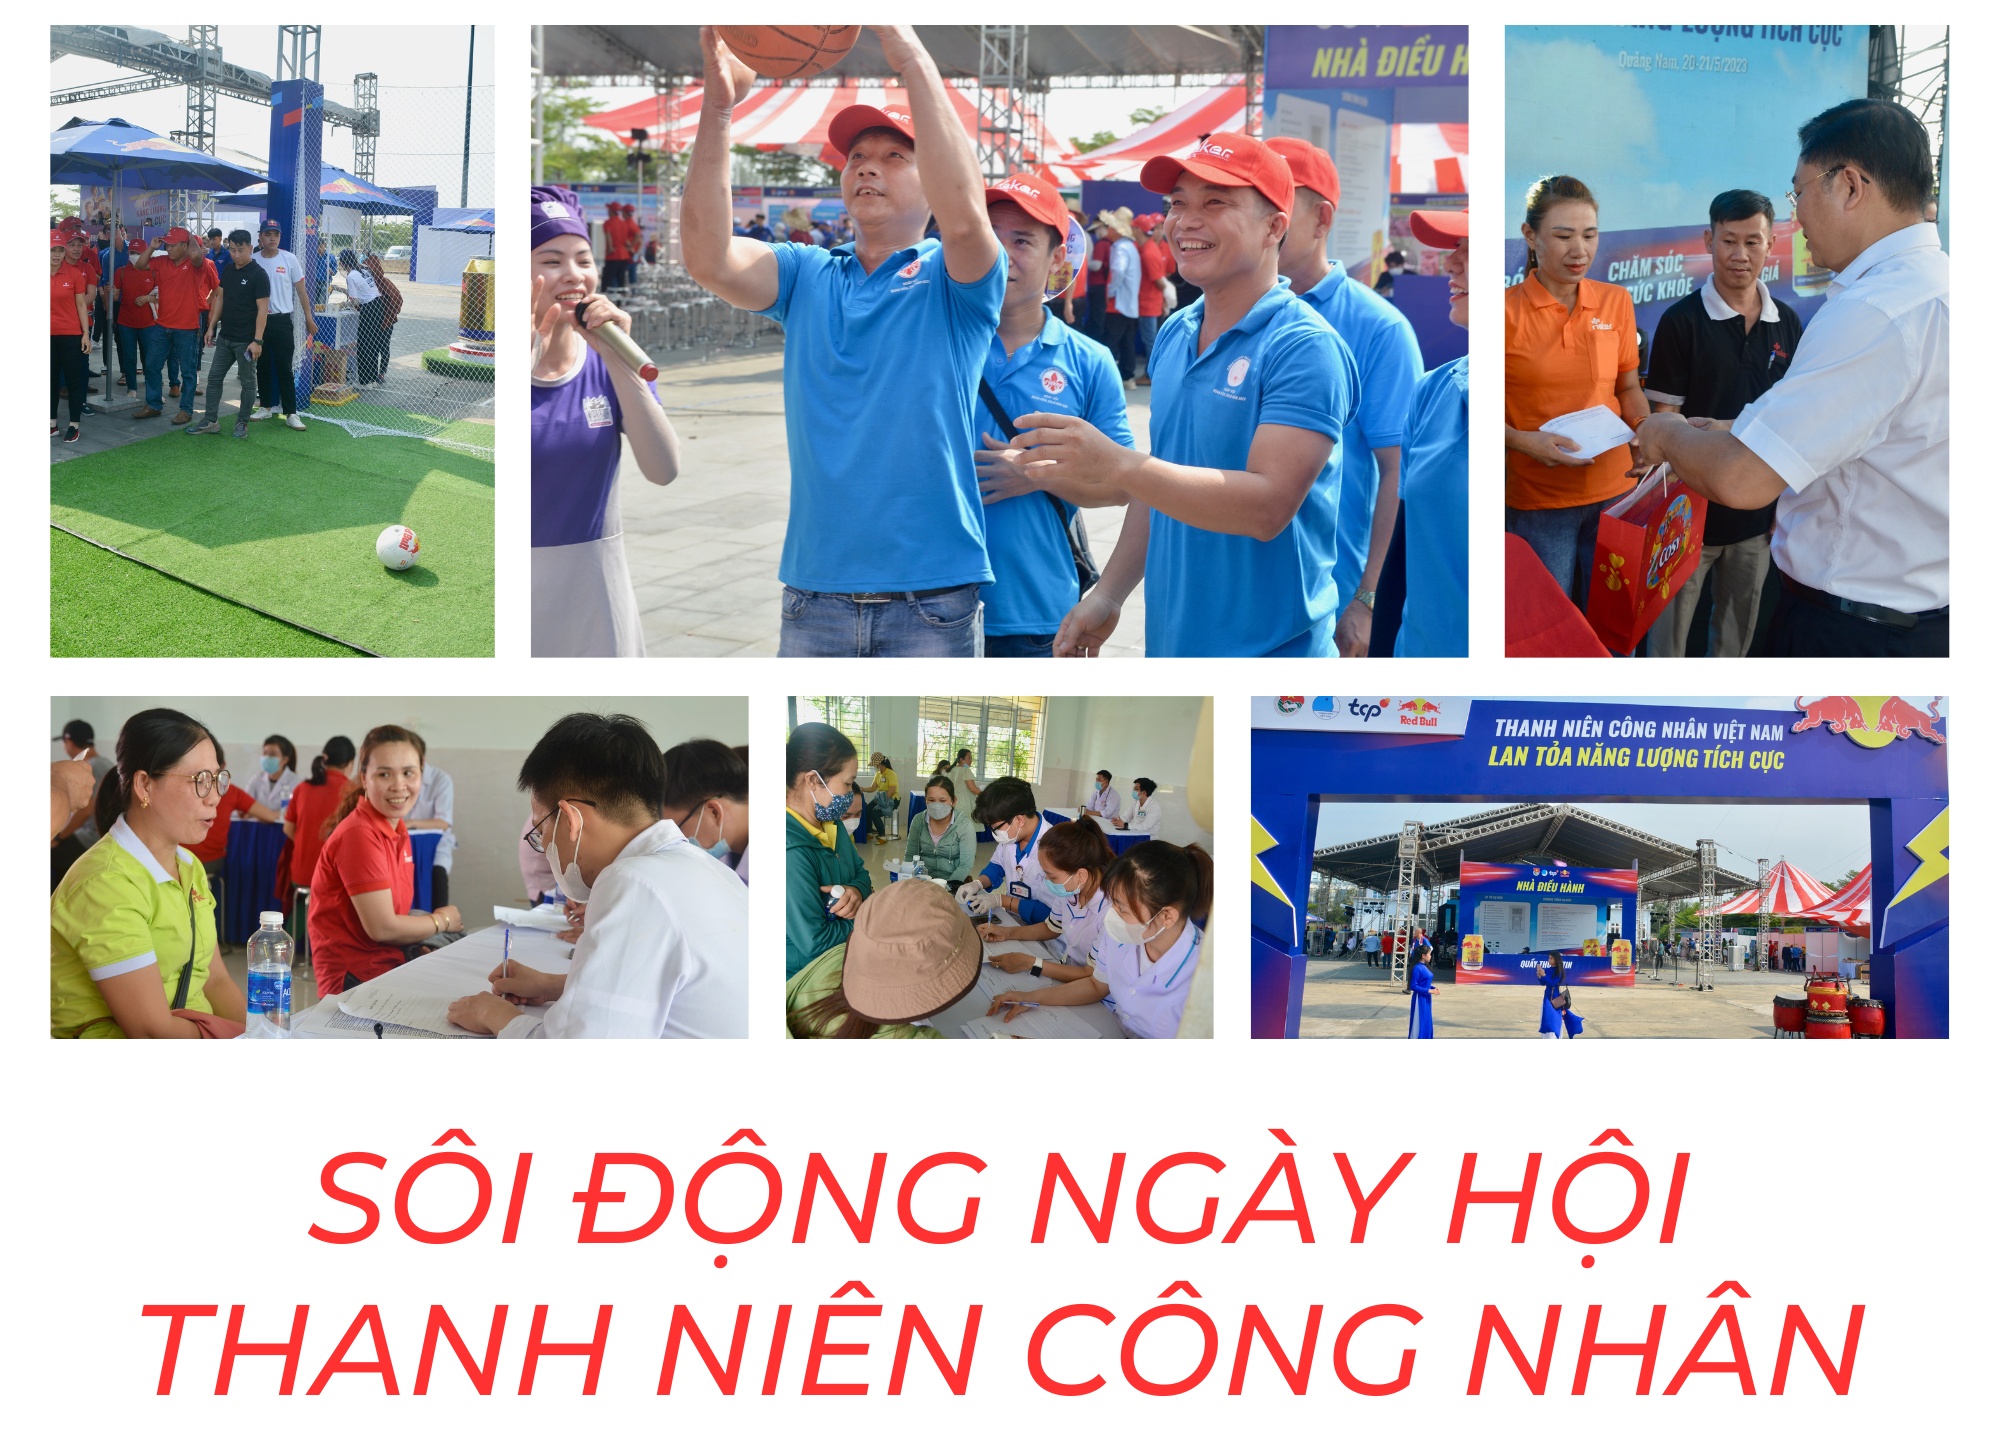 Quảng Nam: Sôi động Ngày hội "Thanh niên công nhân - Lan tỏa năng lượng tích cực"